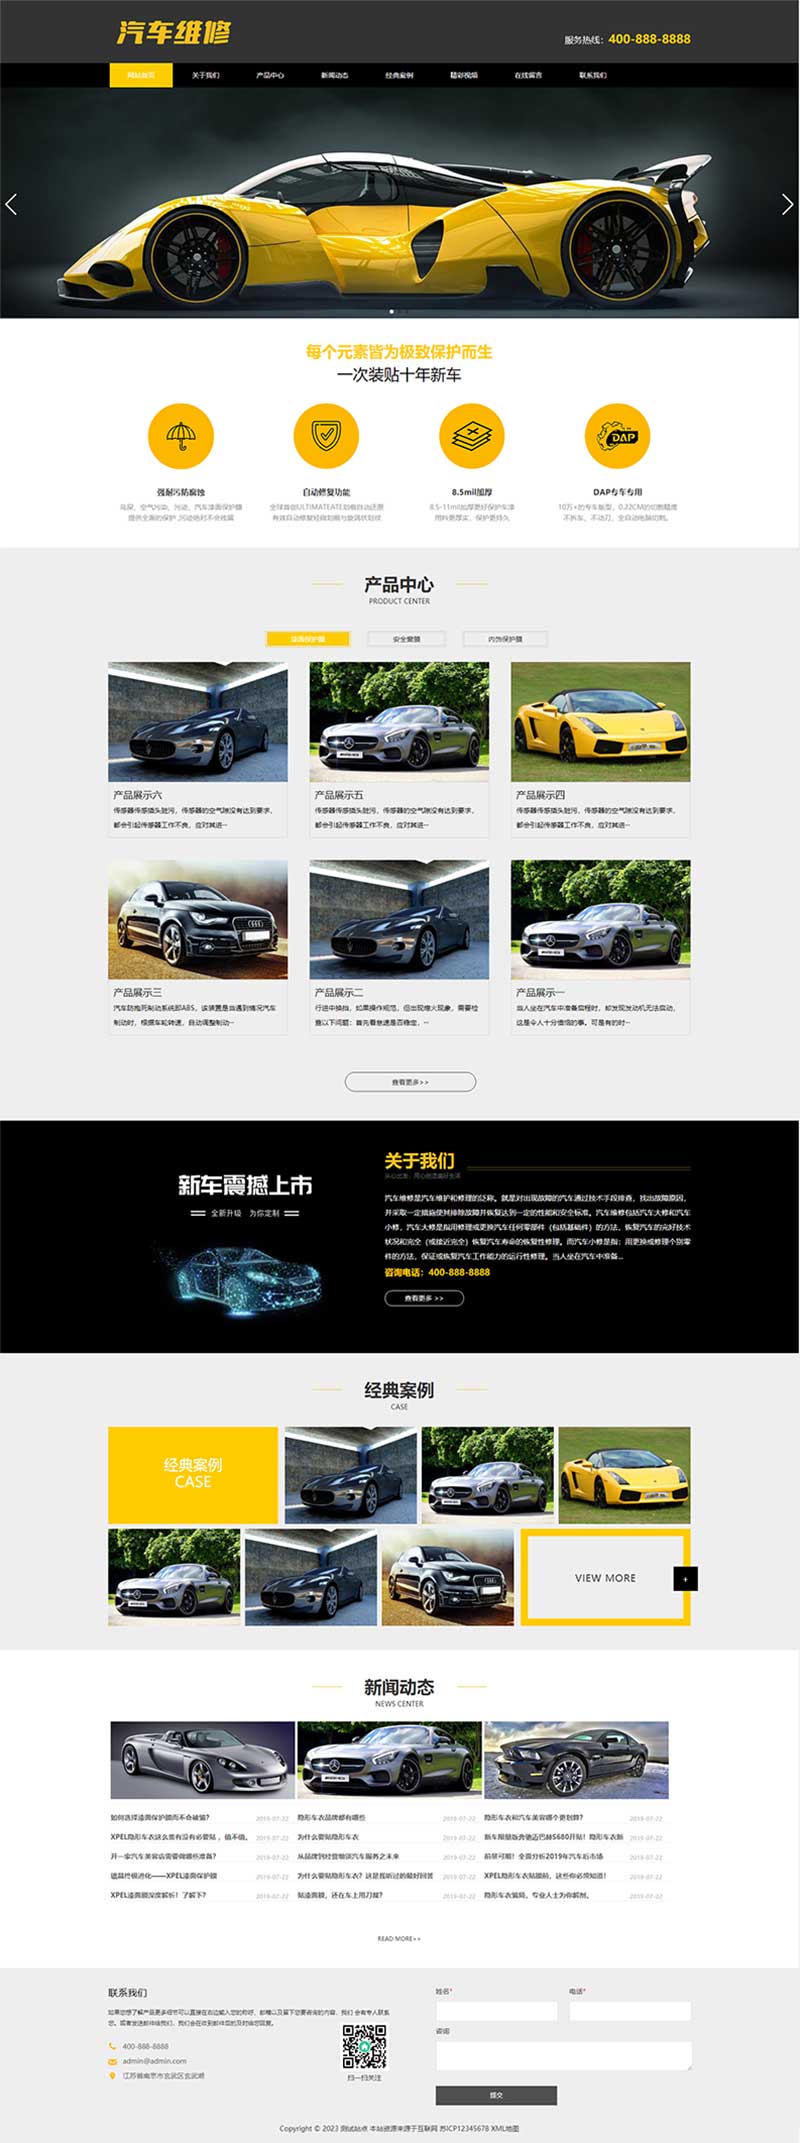 (PC+手机版)汽车美容维修工厂汽车4S店企业网站源码电脑端展示图片